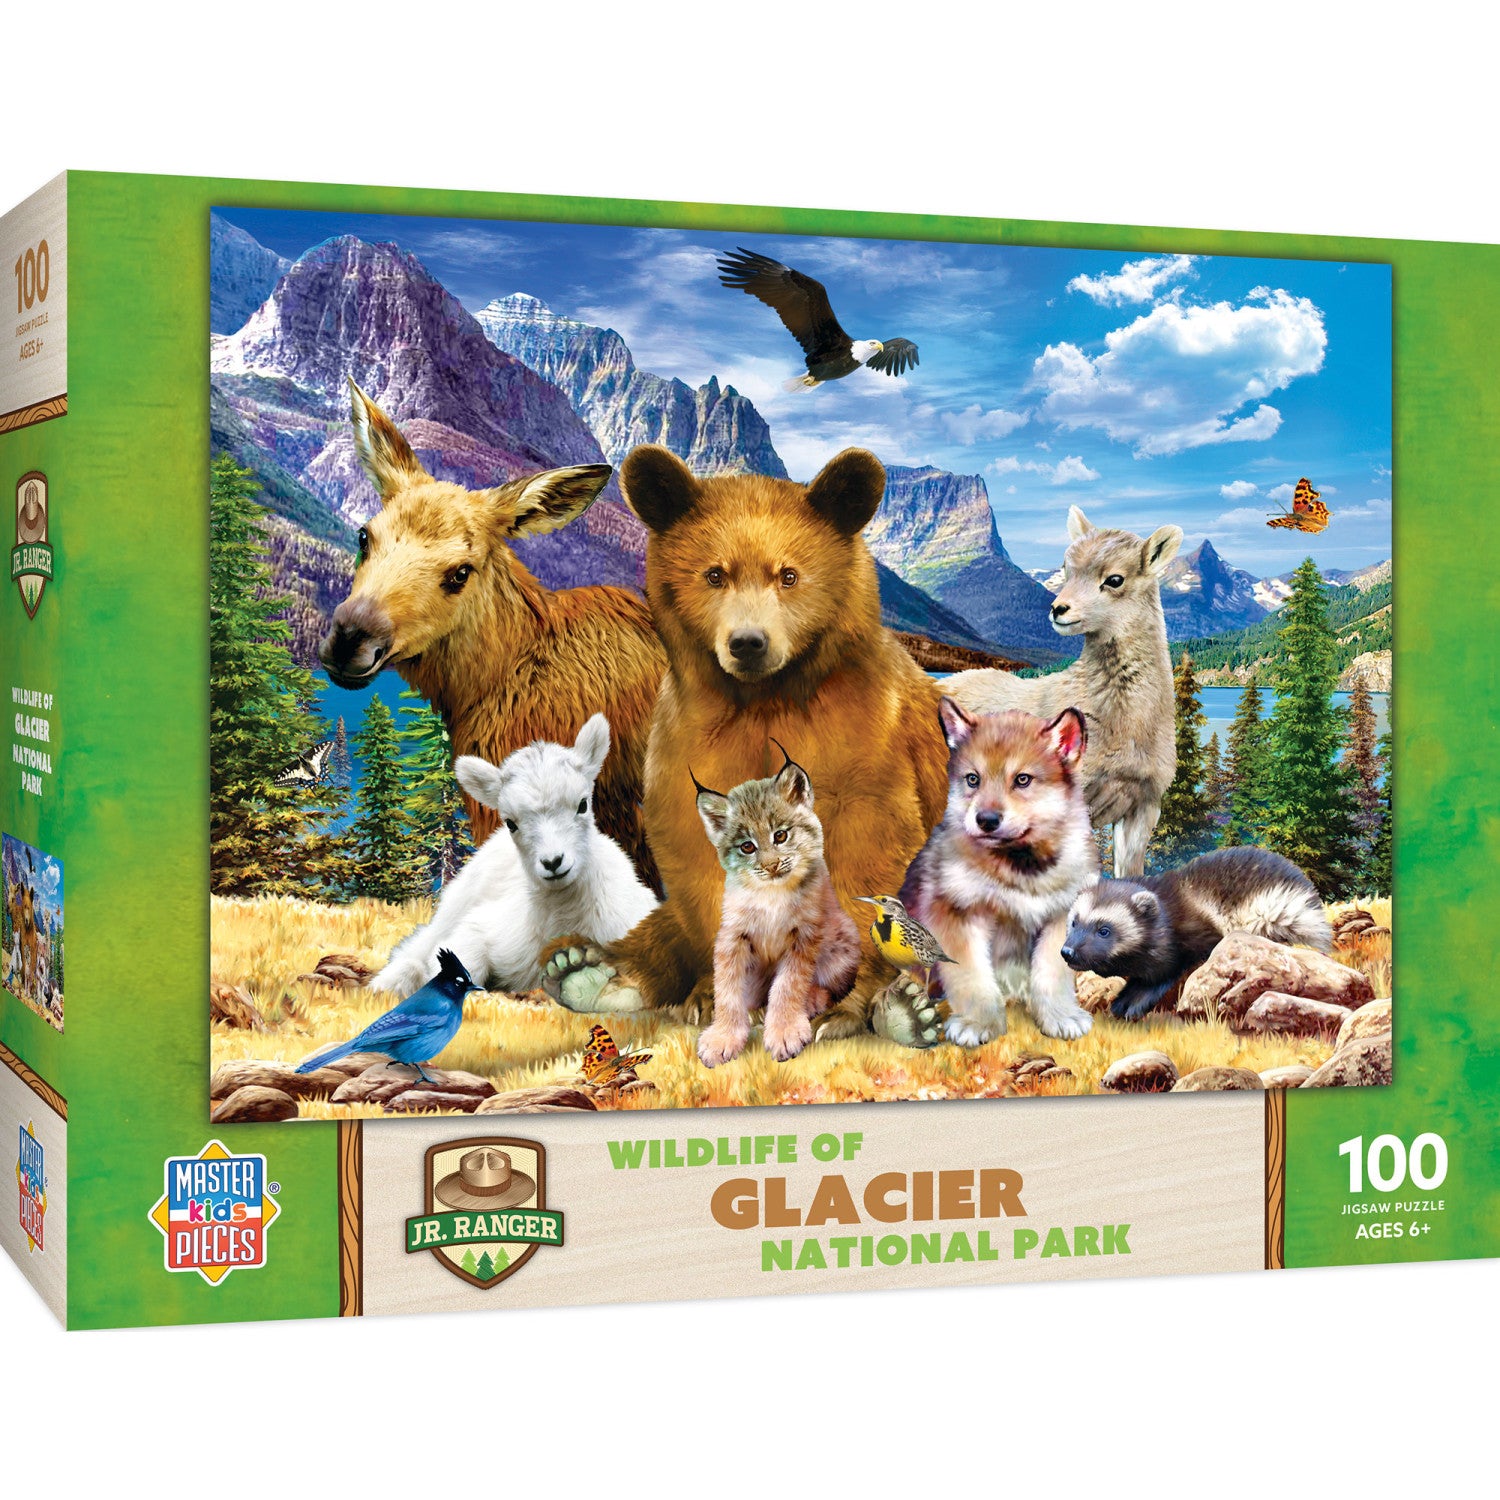 Wildlife of Glacier National Park - 100 Piece Puzzle